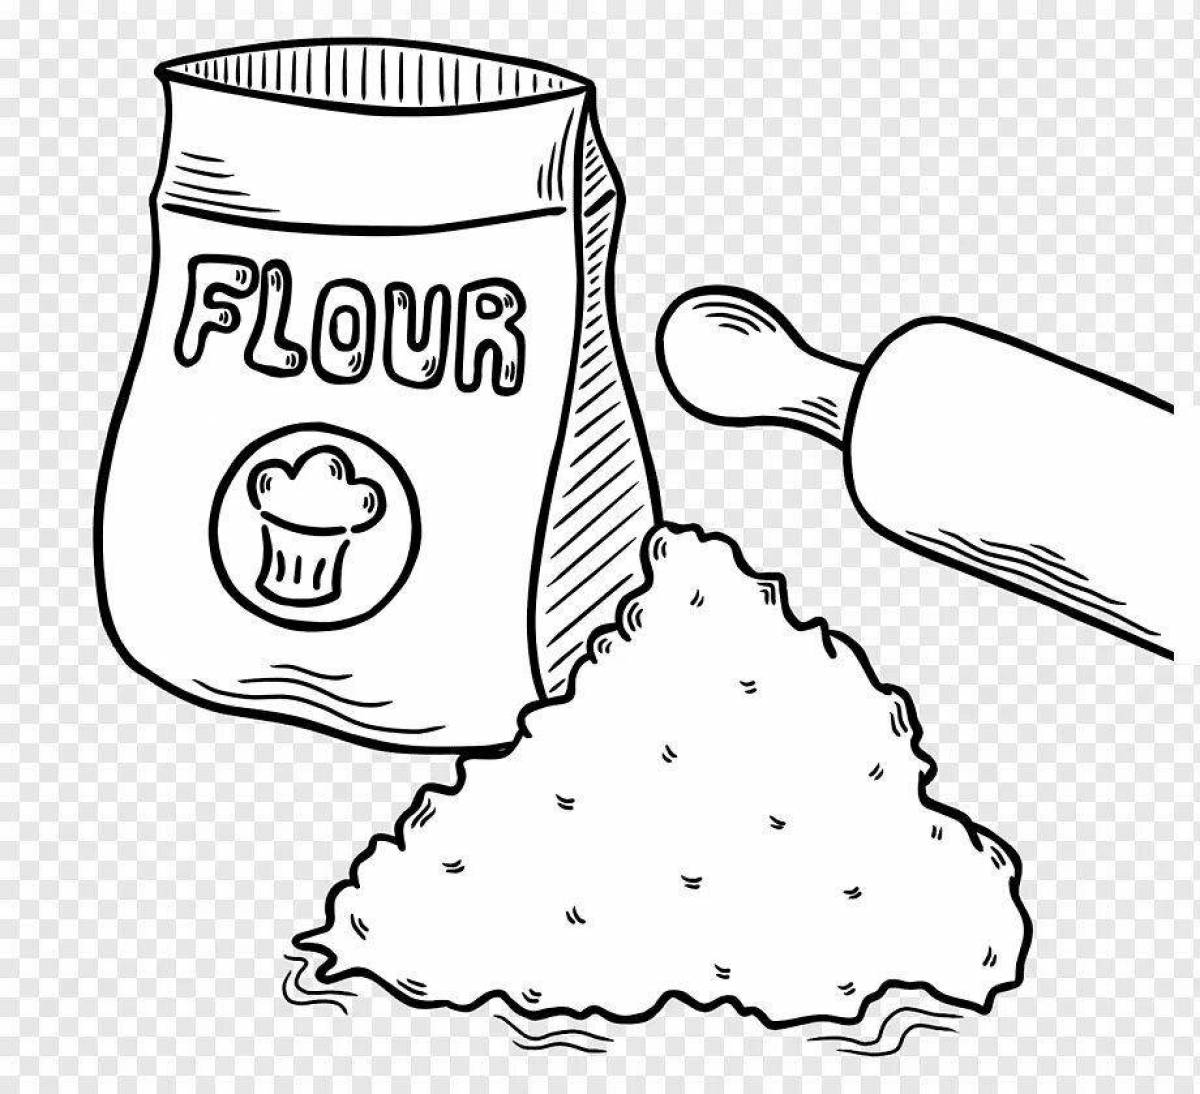 Flour #1